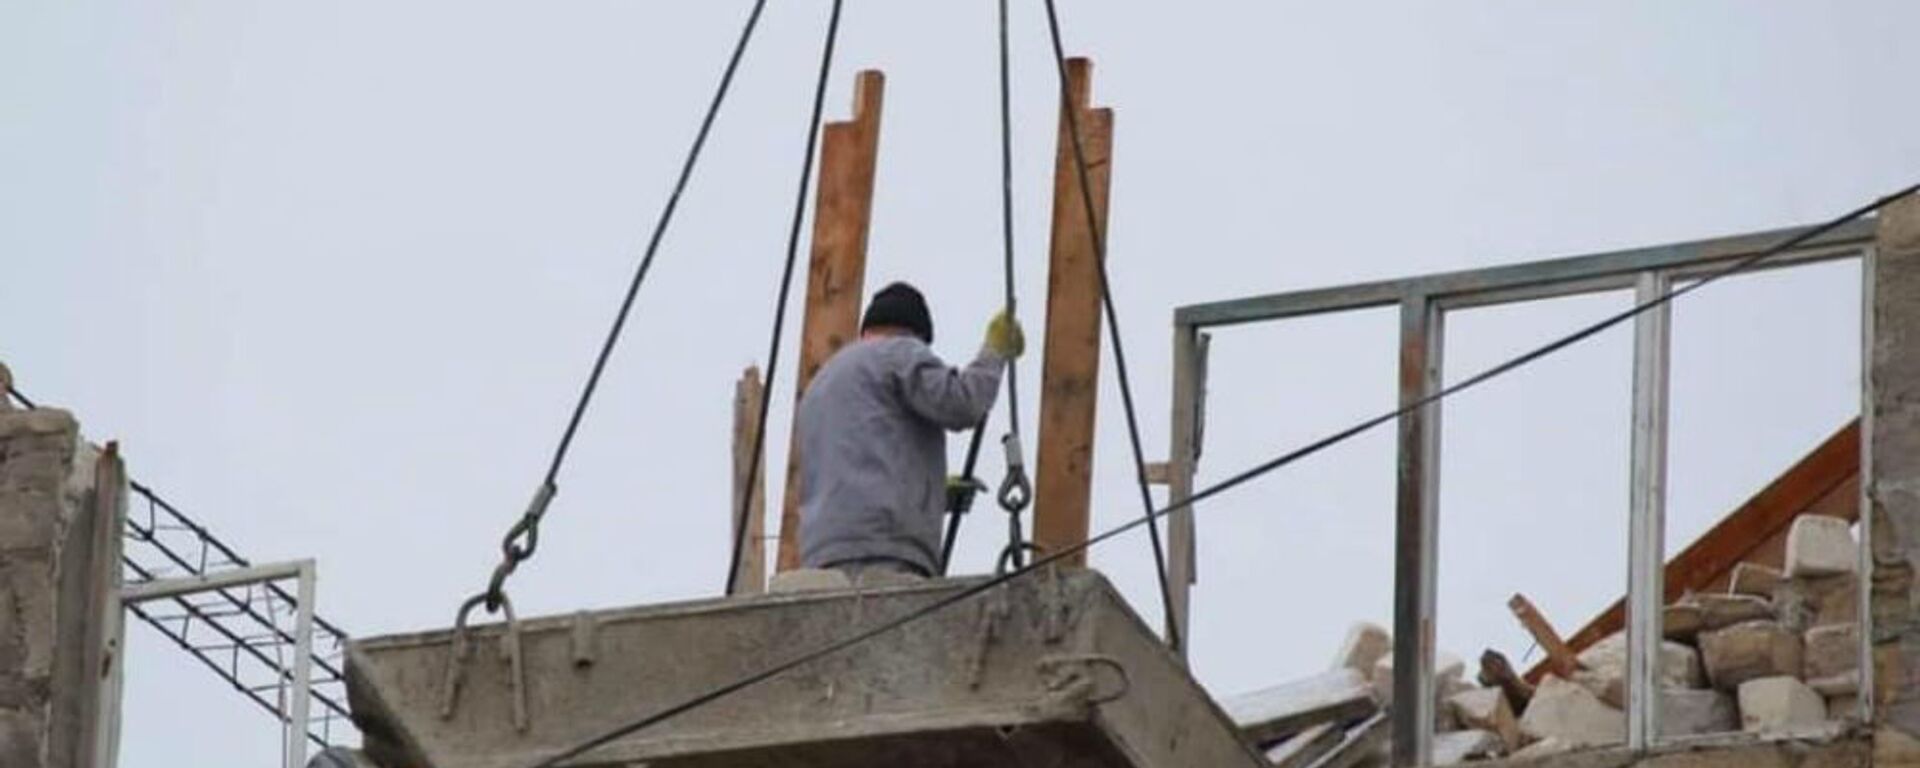 Ремонтные работы по восстановлению гражданских объектов после войны (9 января 3032). Карабах - Sputnik Արմենիա, 1920, 09.01.2021